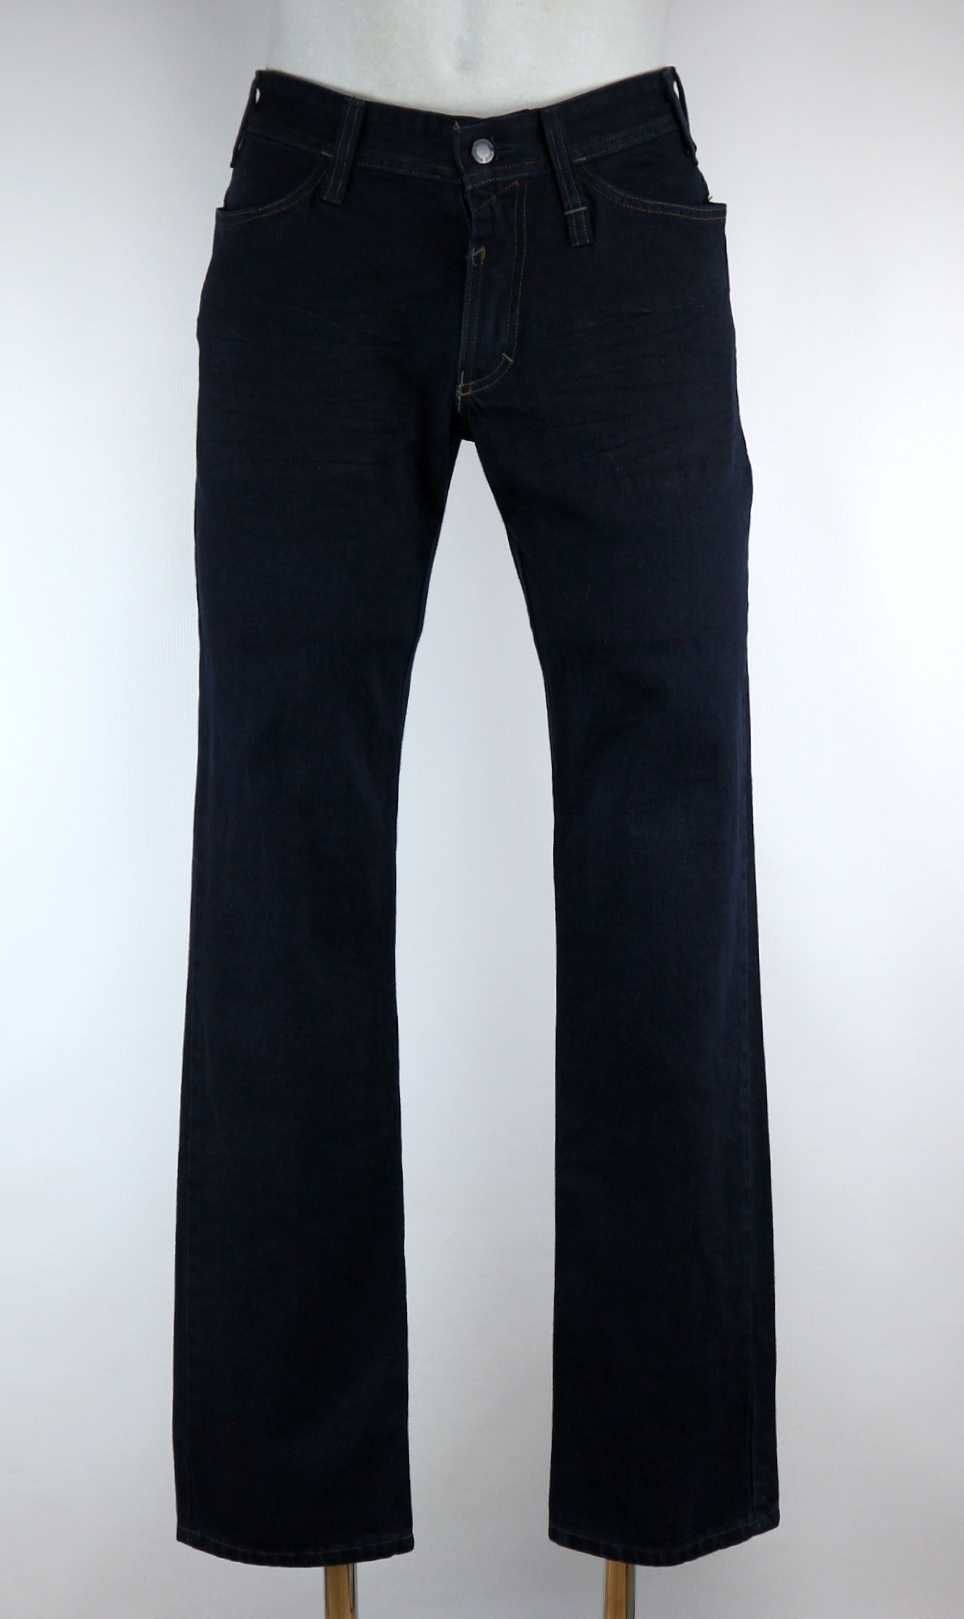 Mascot Manhattan spodnie jeansy robocze W31 L32 pas 2 x 40 cm